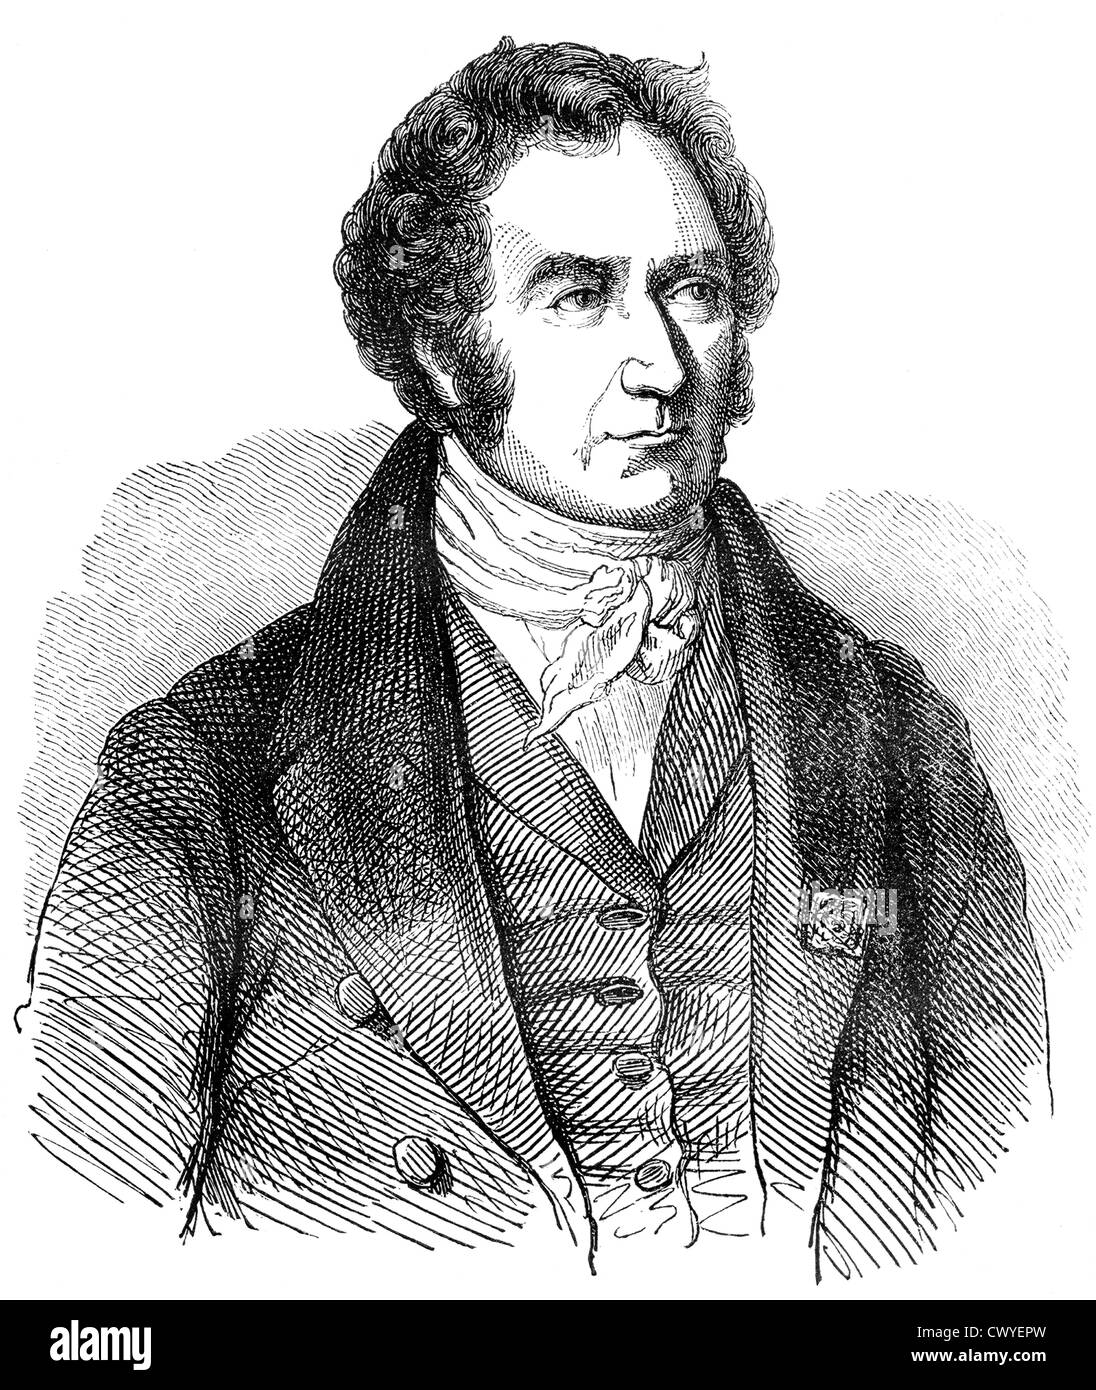 Dominique François Jean Arago ou Joan Francesc Domènec Arago, 1786 - 1853, un physicien et homme politique français, Banque D'Images